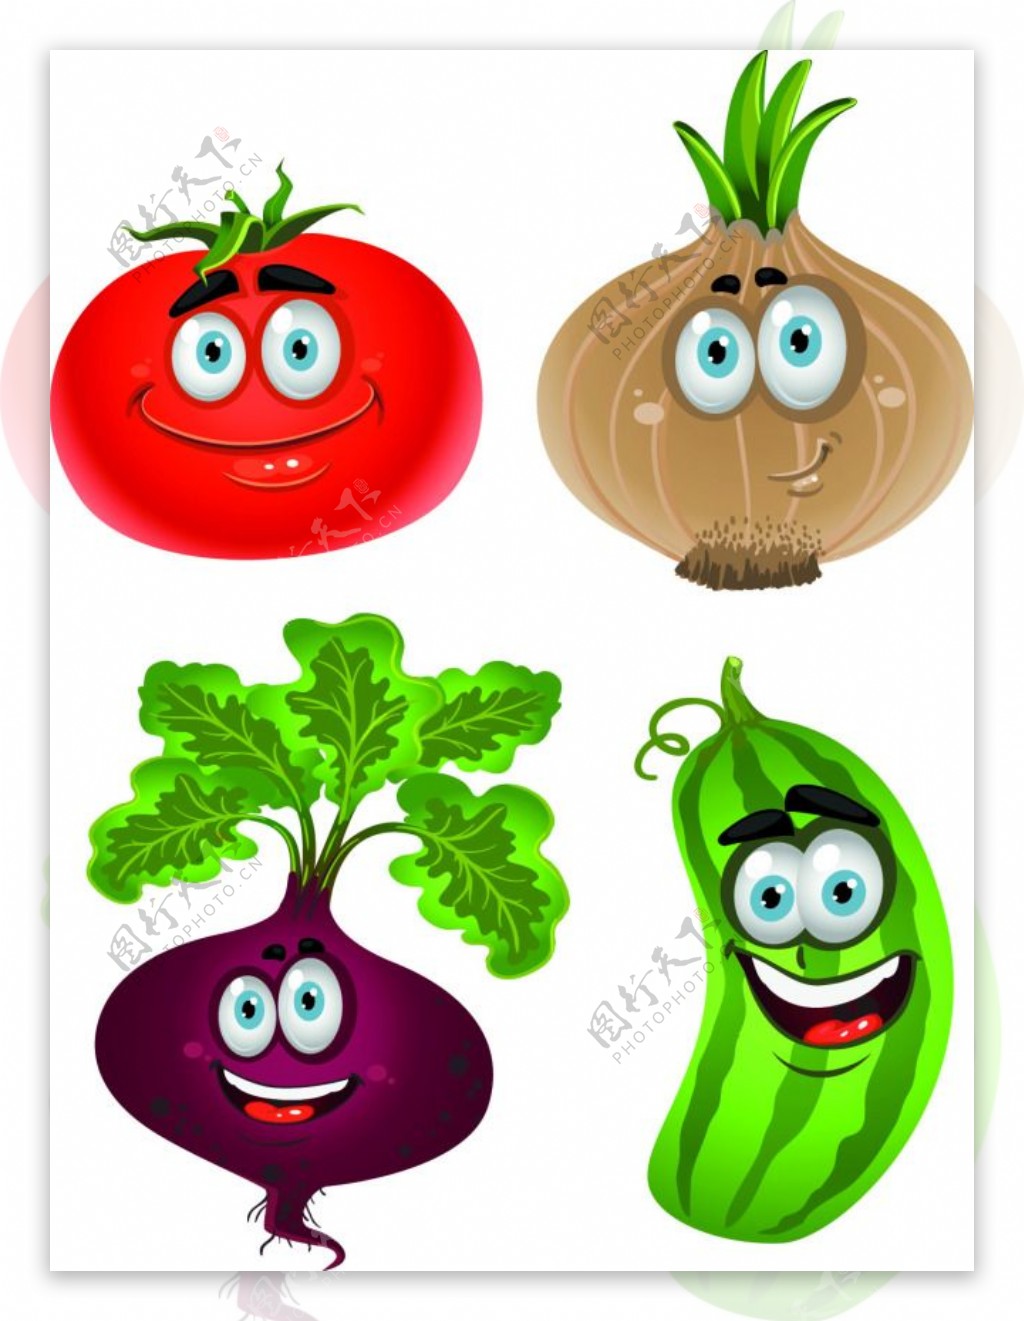 蔬菜卡通形象矢量素材